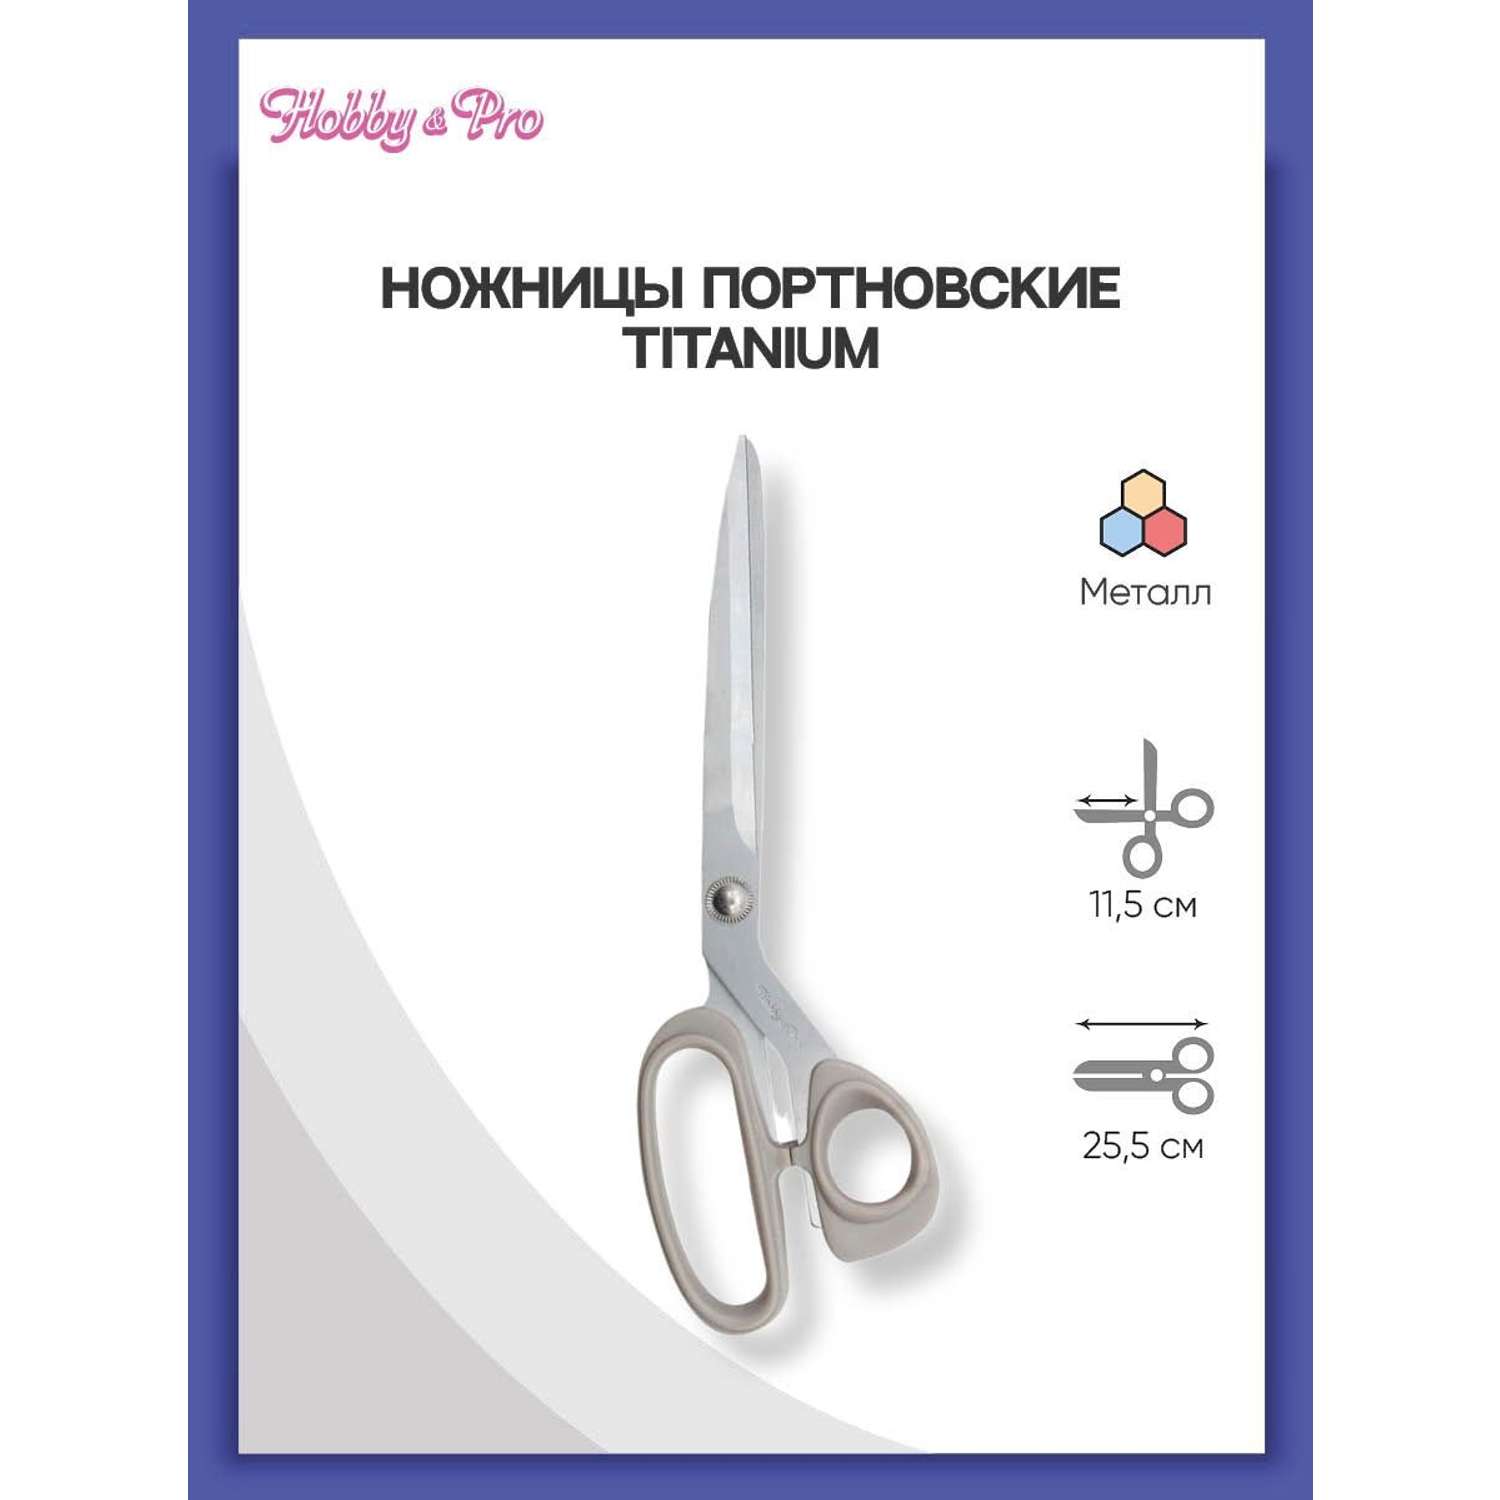 Ножницы портновские Hobby Pro Titanium 25см - фото 1